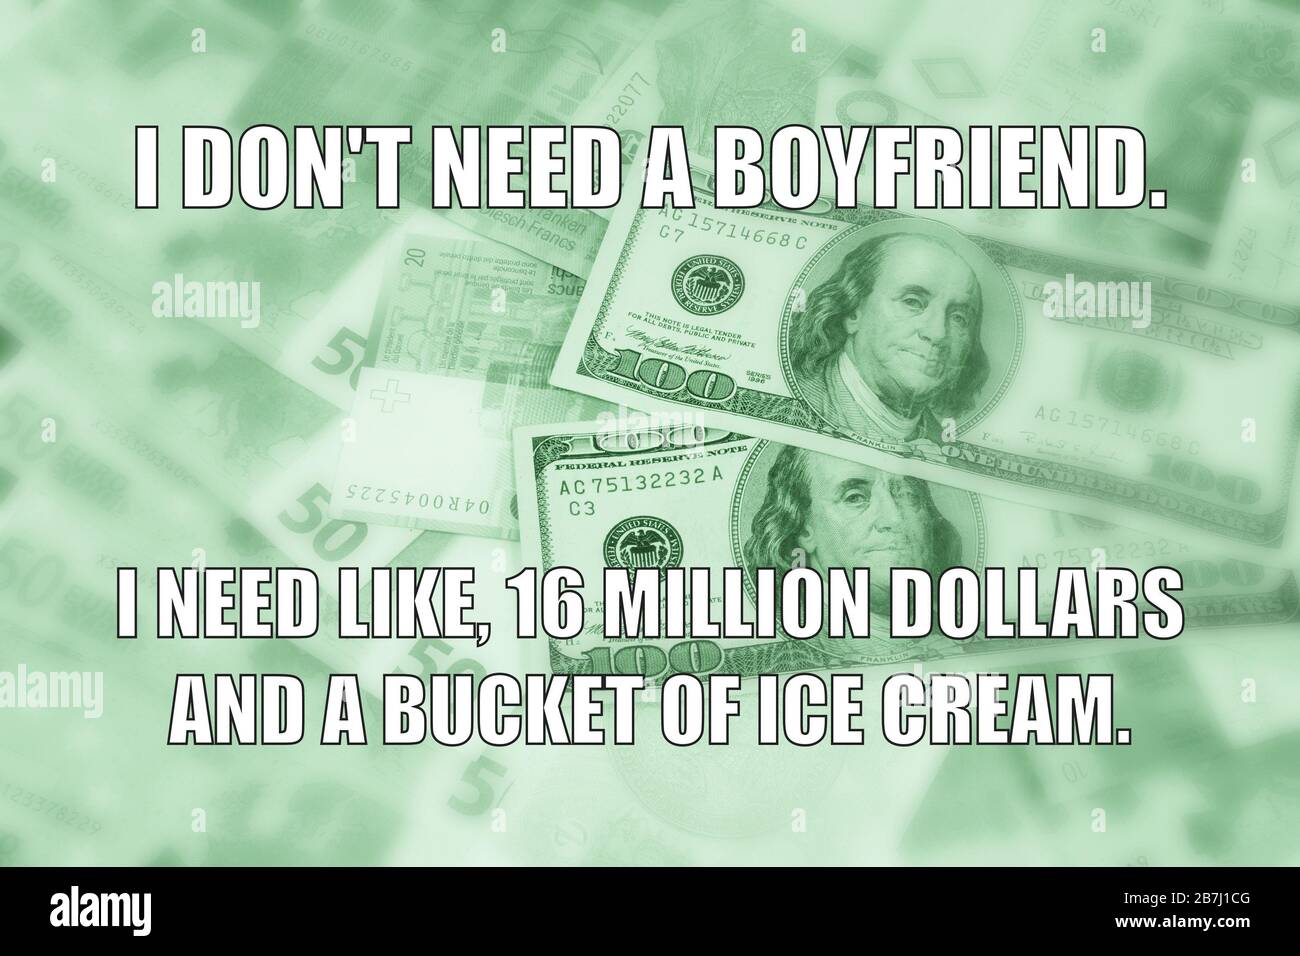 Boyfriend, dollari e gelato divertente meme per la condivisione dei social media. Foto Stock